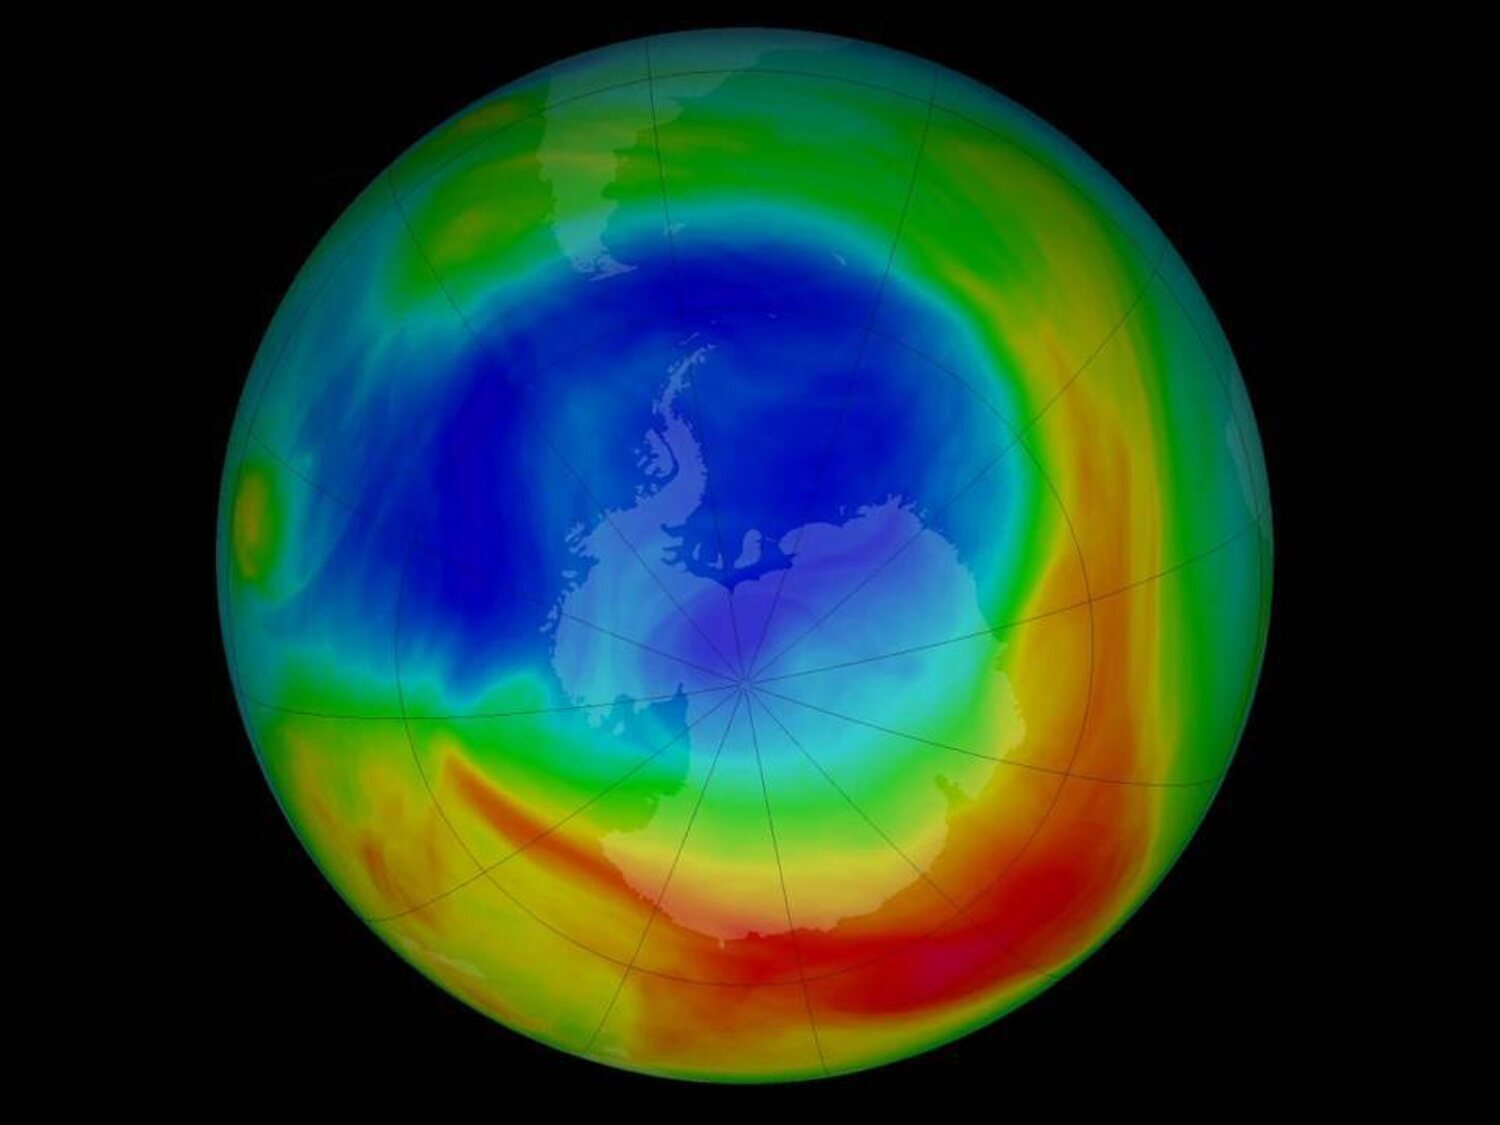 El agujero de la capa de ozono se recuperará en 2040 si se siguen prohibiendo las sustancias químicas, según la ONU